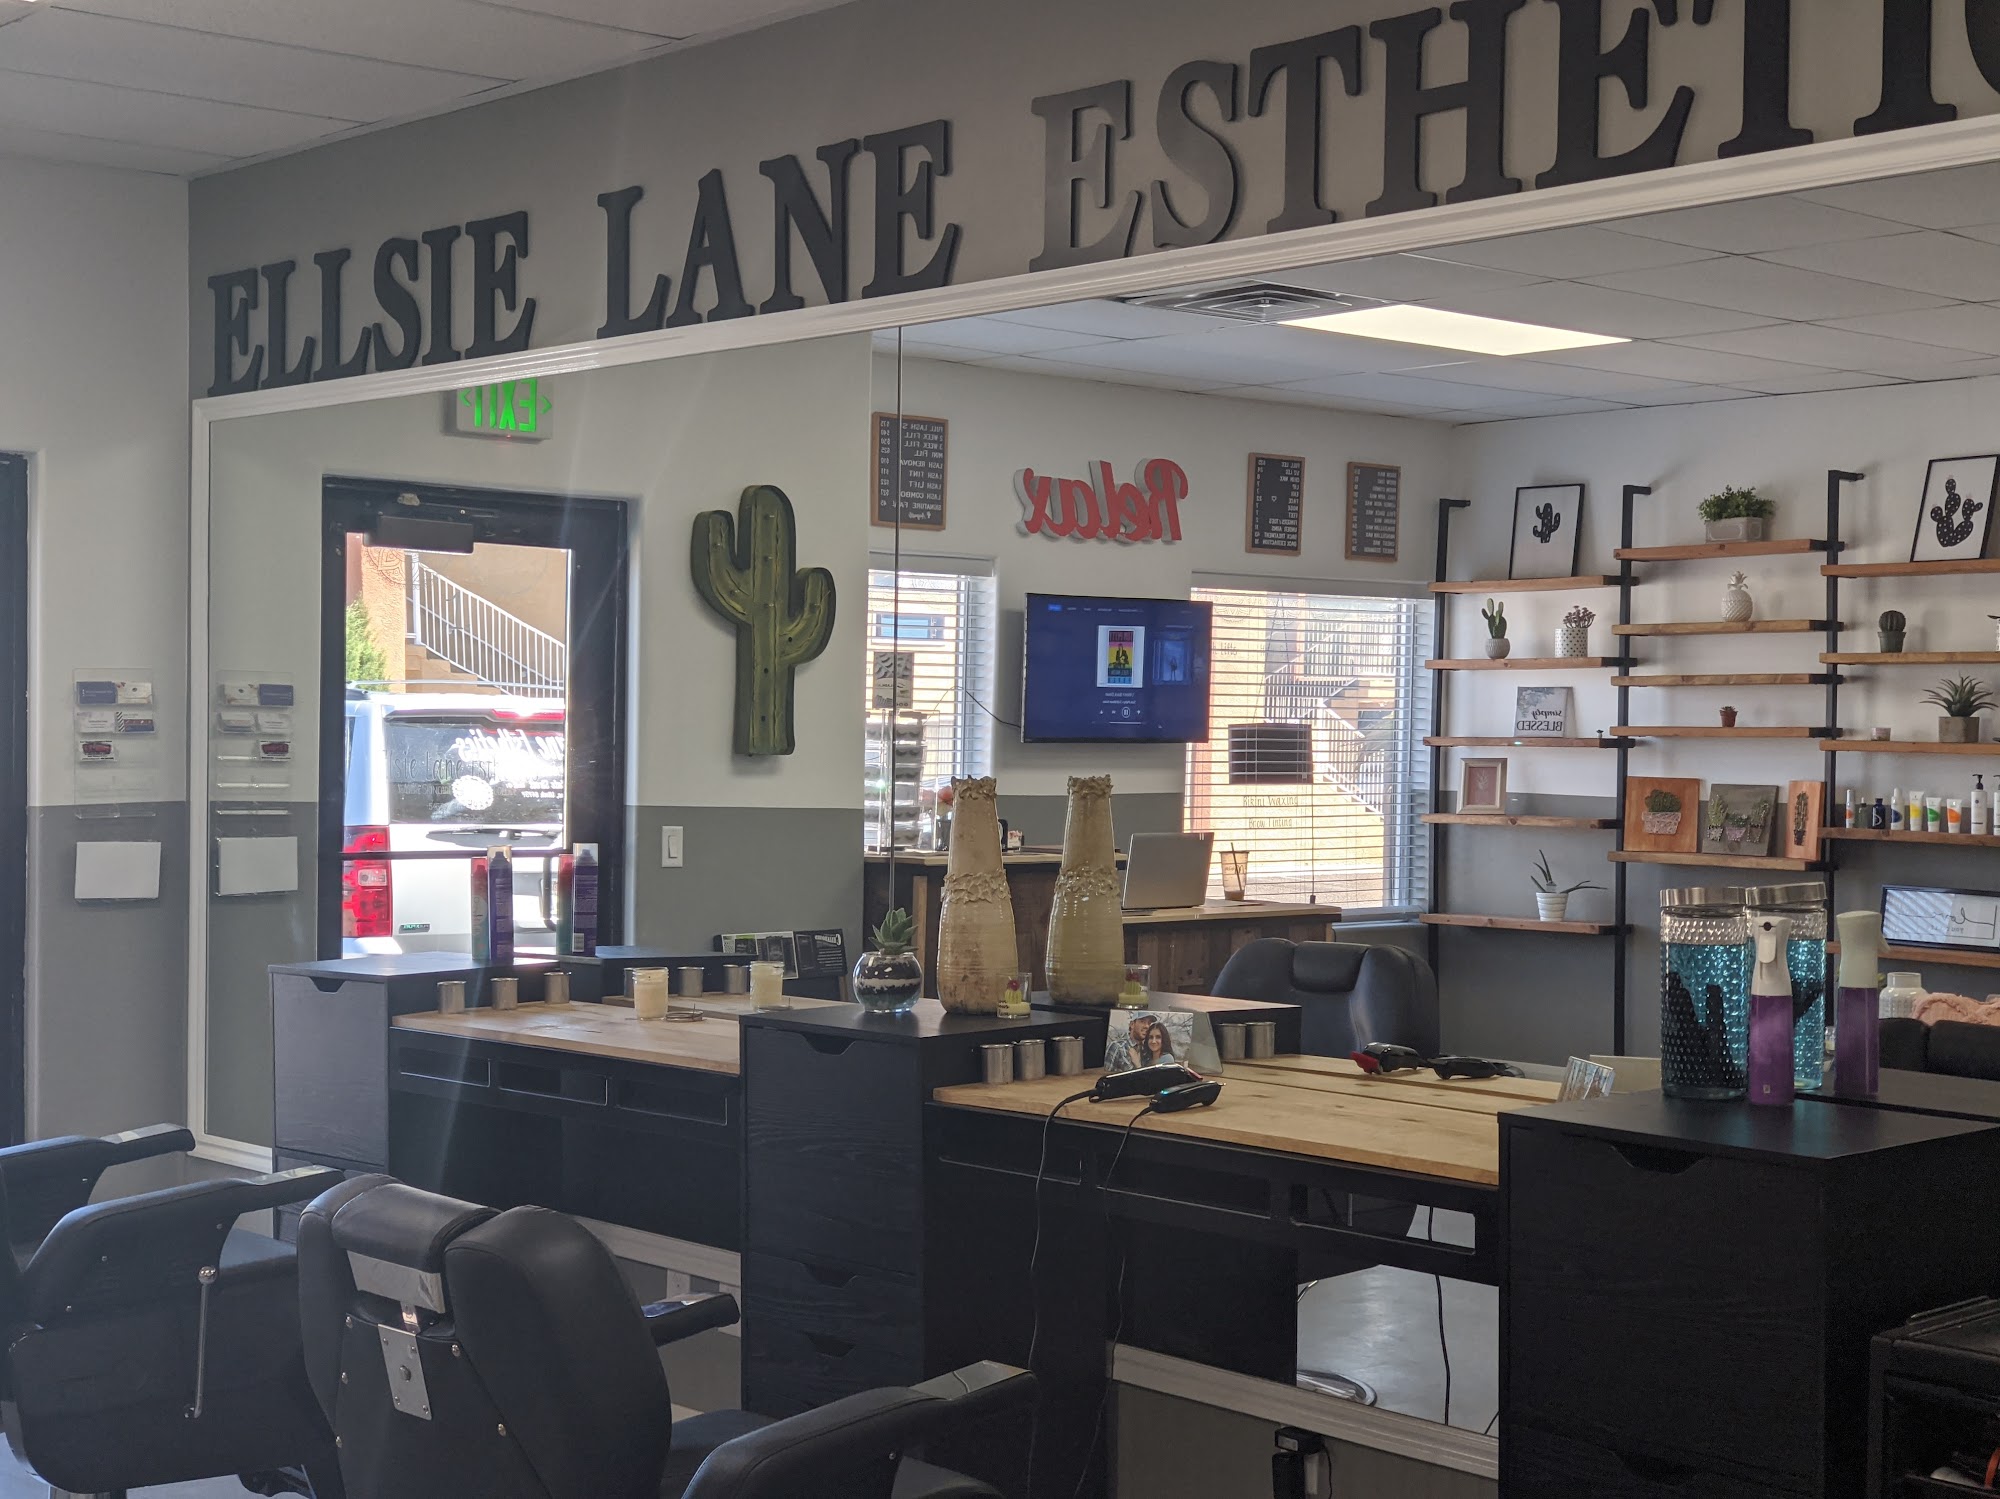 Ellsie Lane Esthetics 545 W State St #1, Hurricane Utah 84737